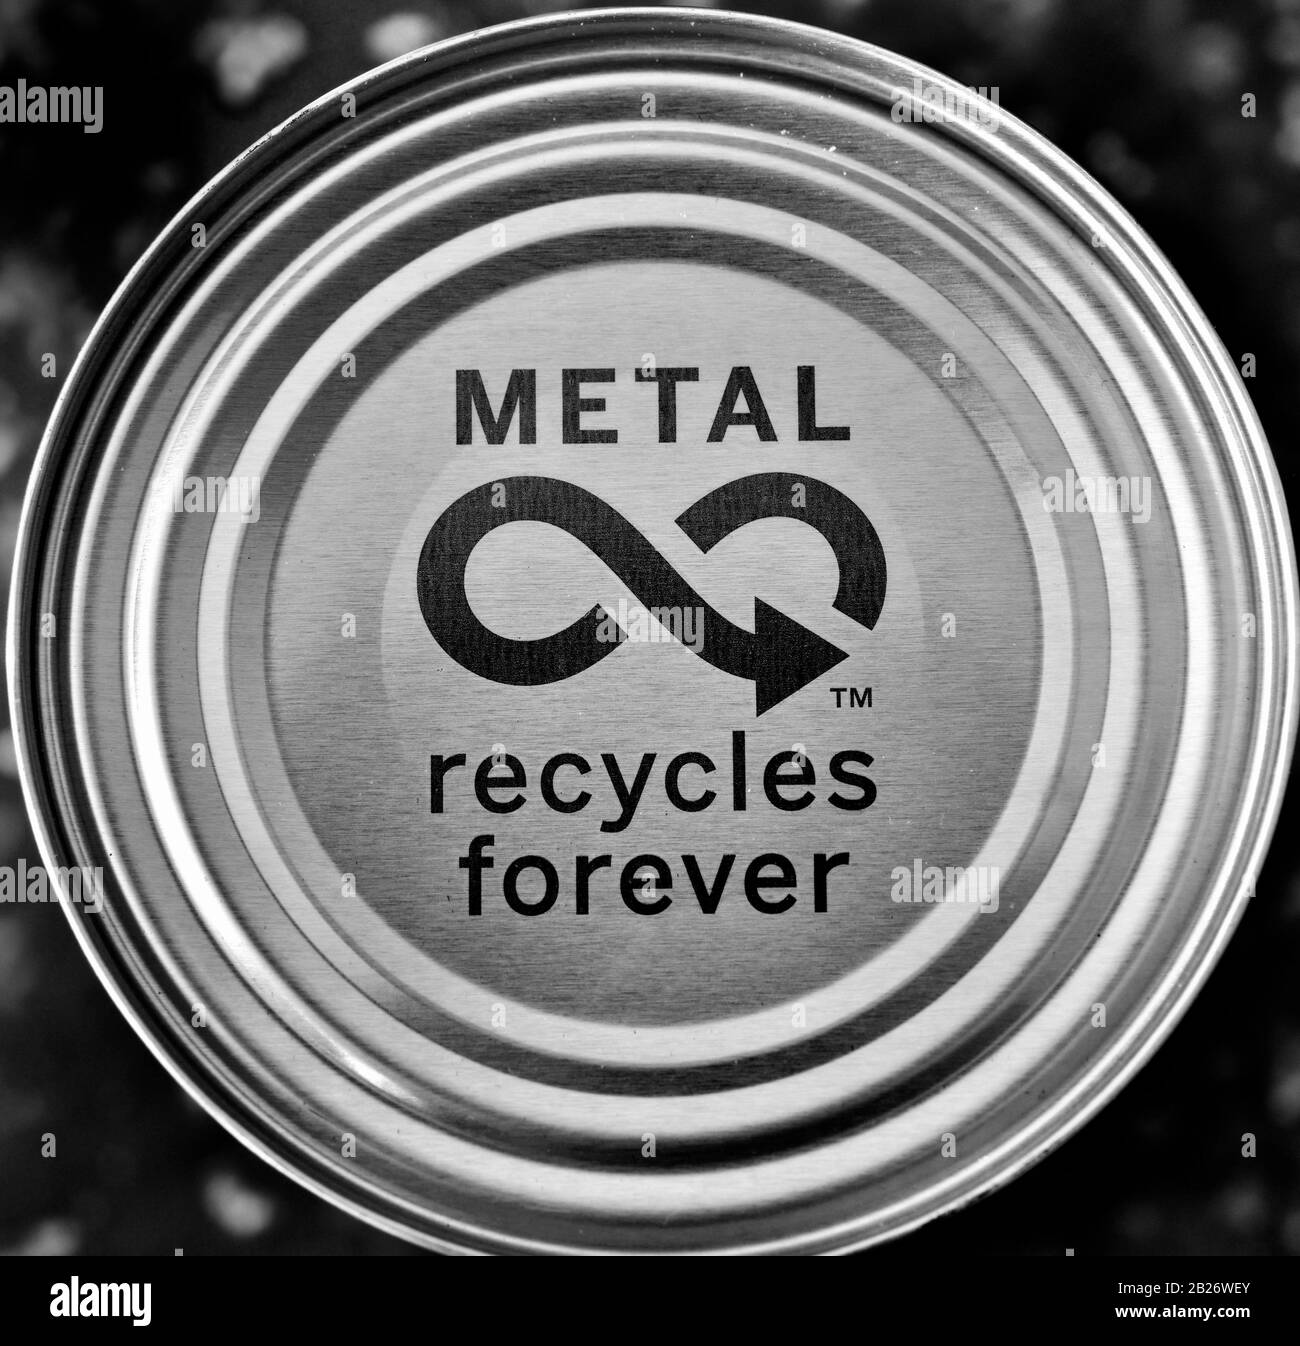 Le métal recycle à jamais sur le couvercle de certains aliments en conserve au Royaume-Uni Banque D'Images